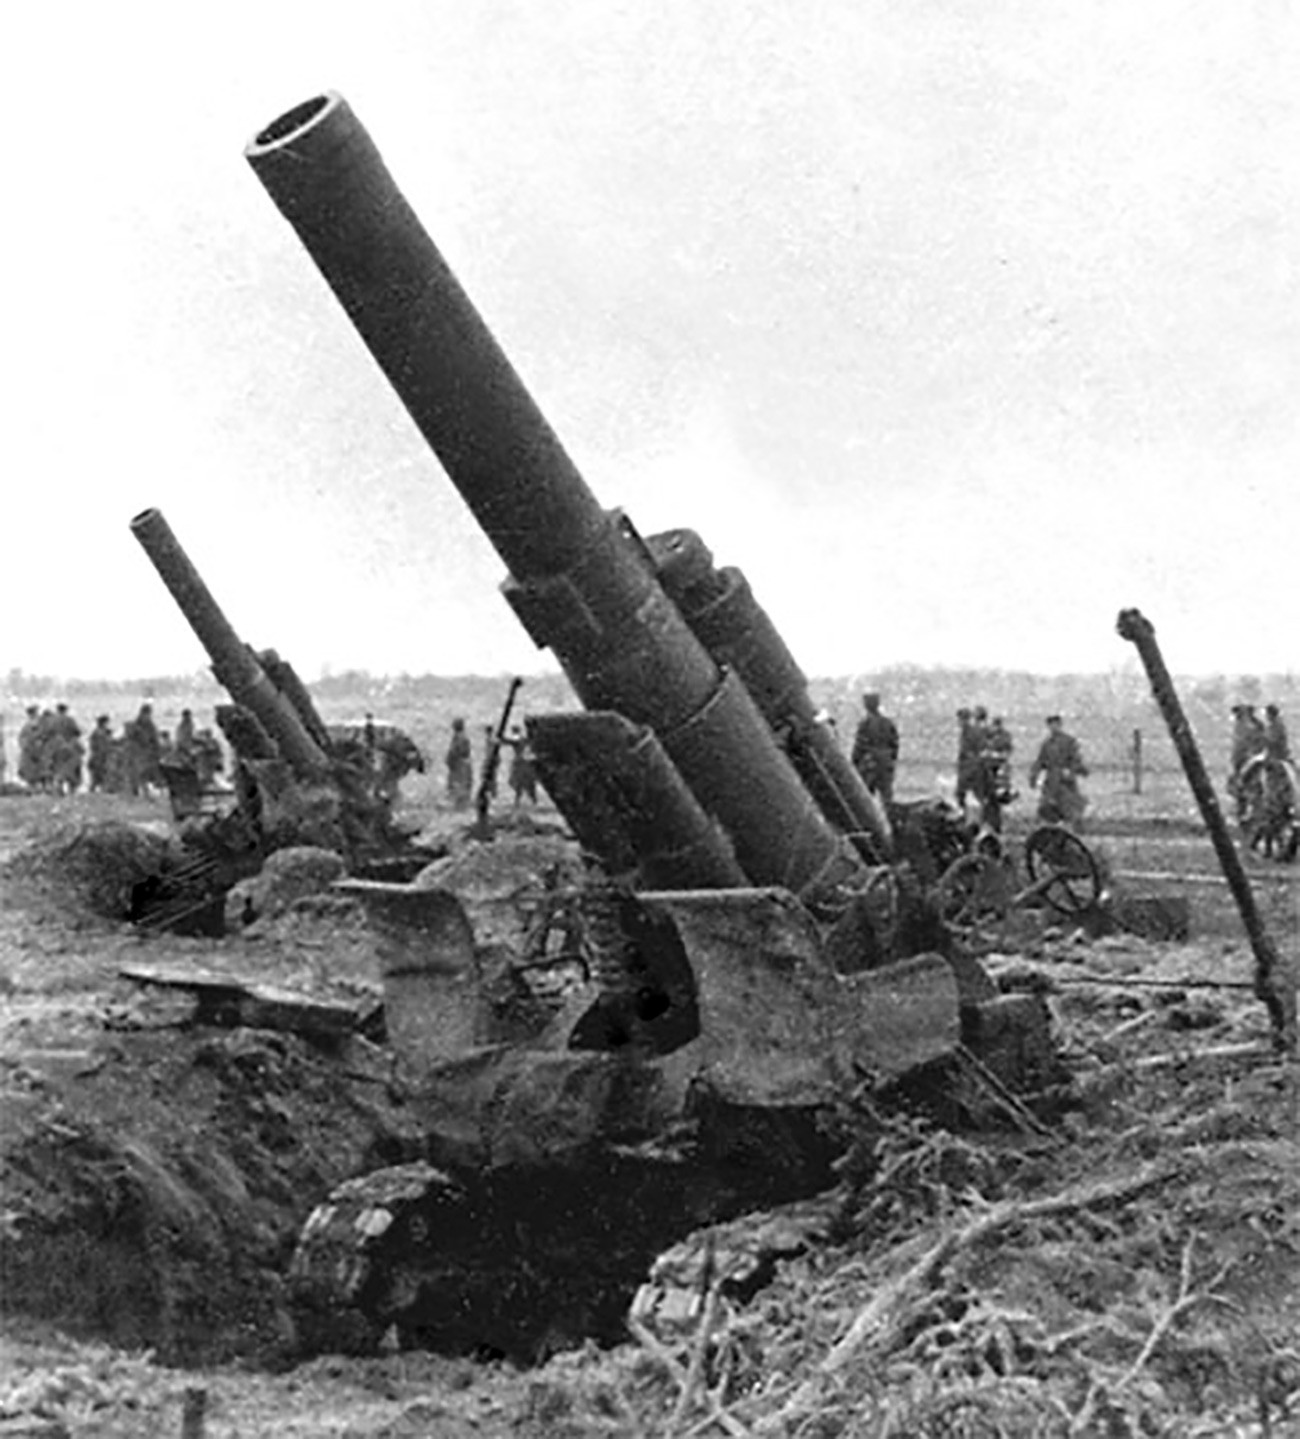 Батерија совјетских тешких хаубица м1931 калибра 203 мм на Трећем белоруском фронту, лето 1944.